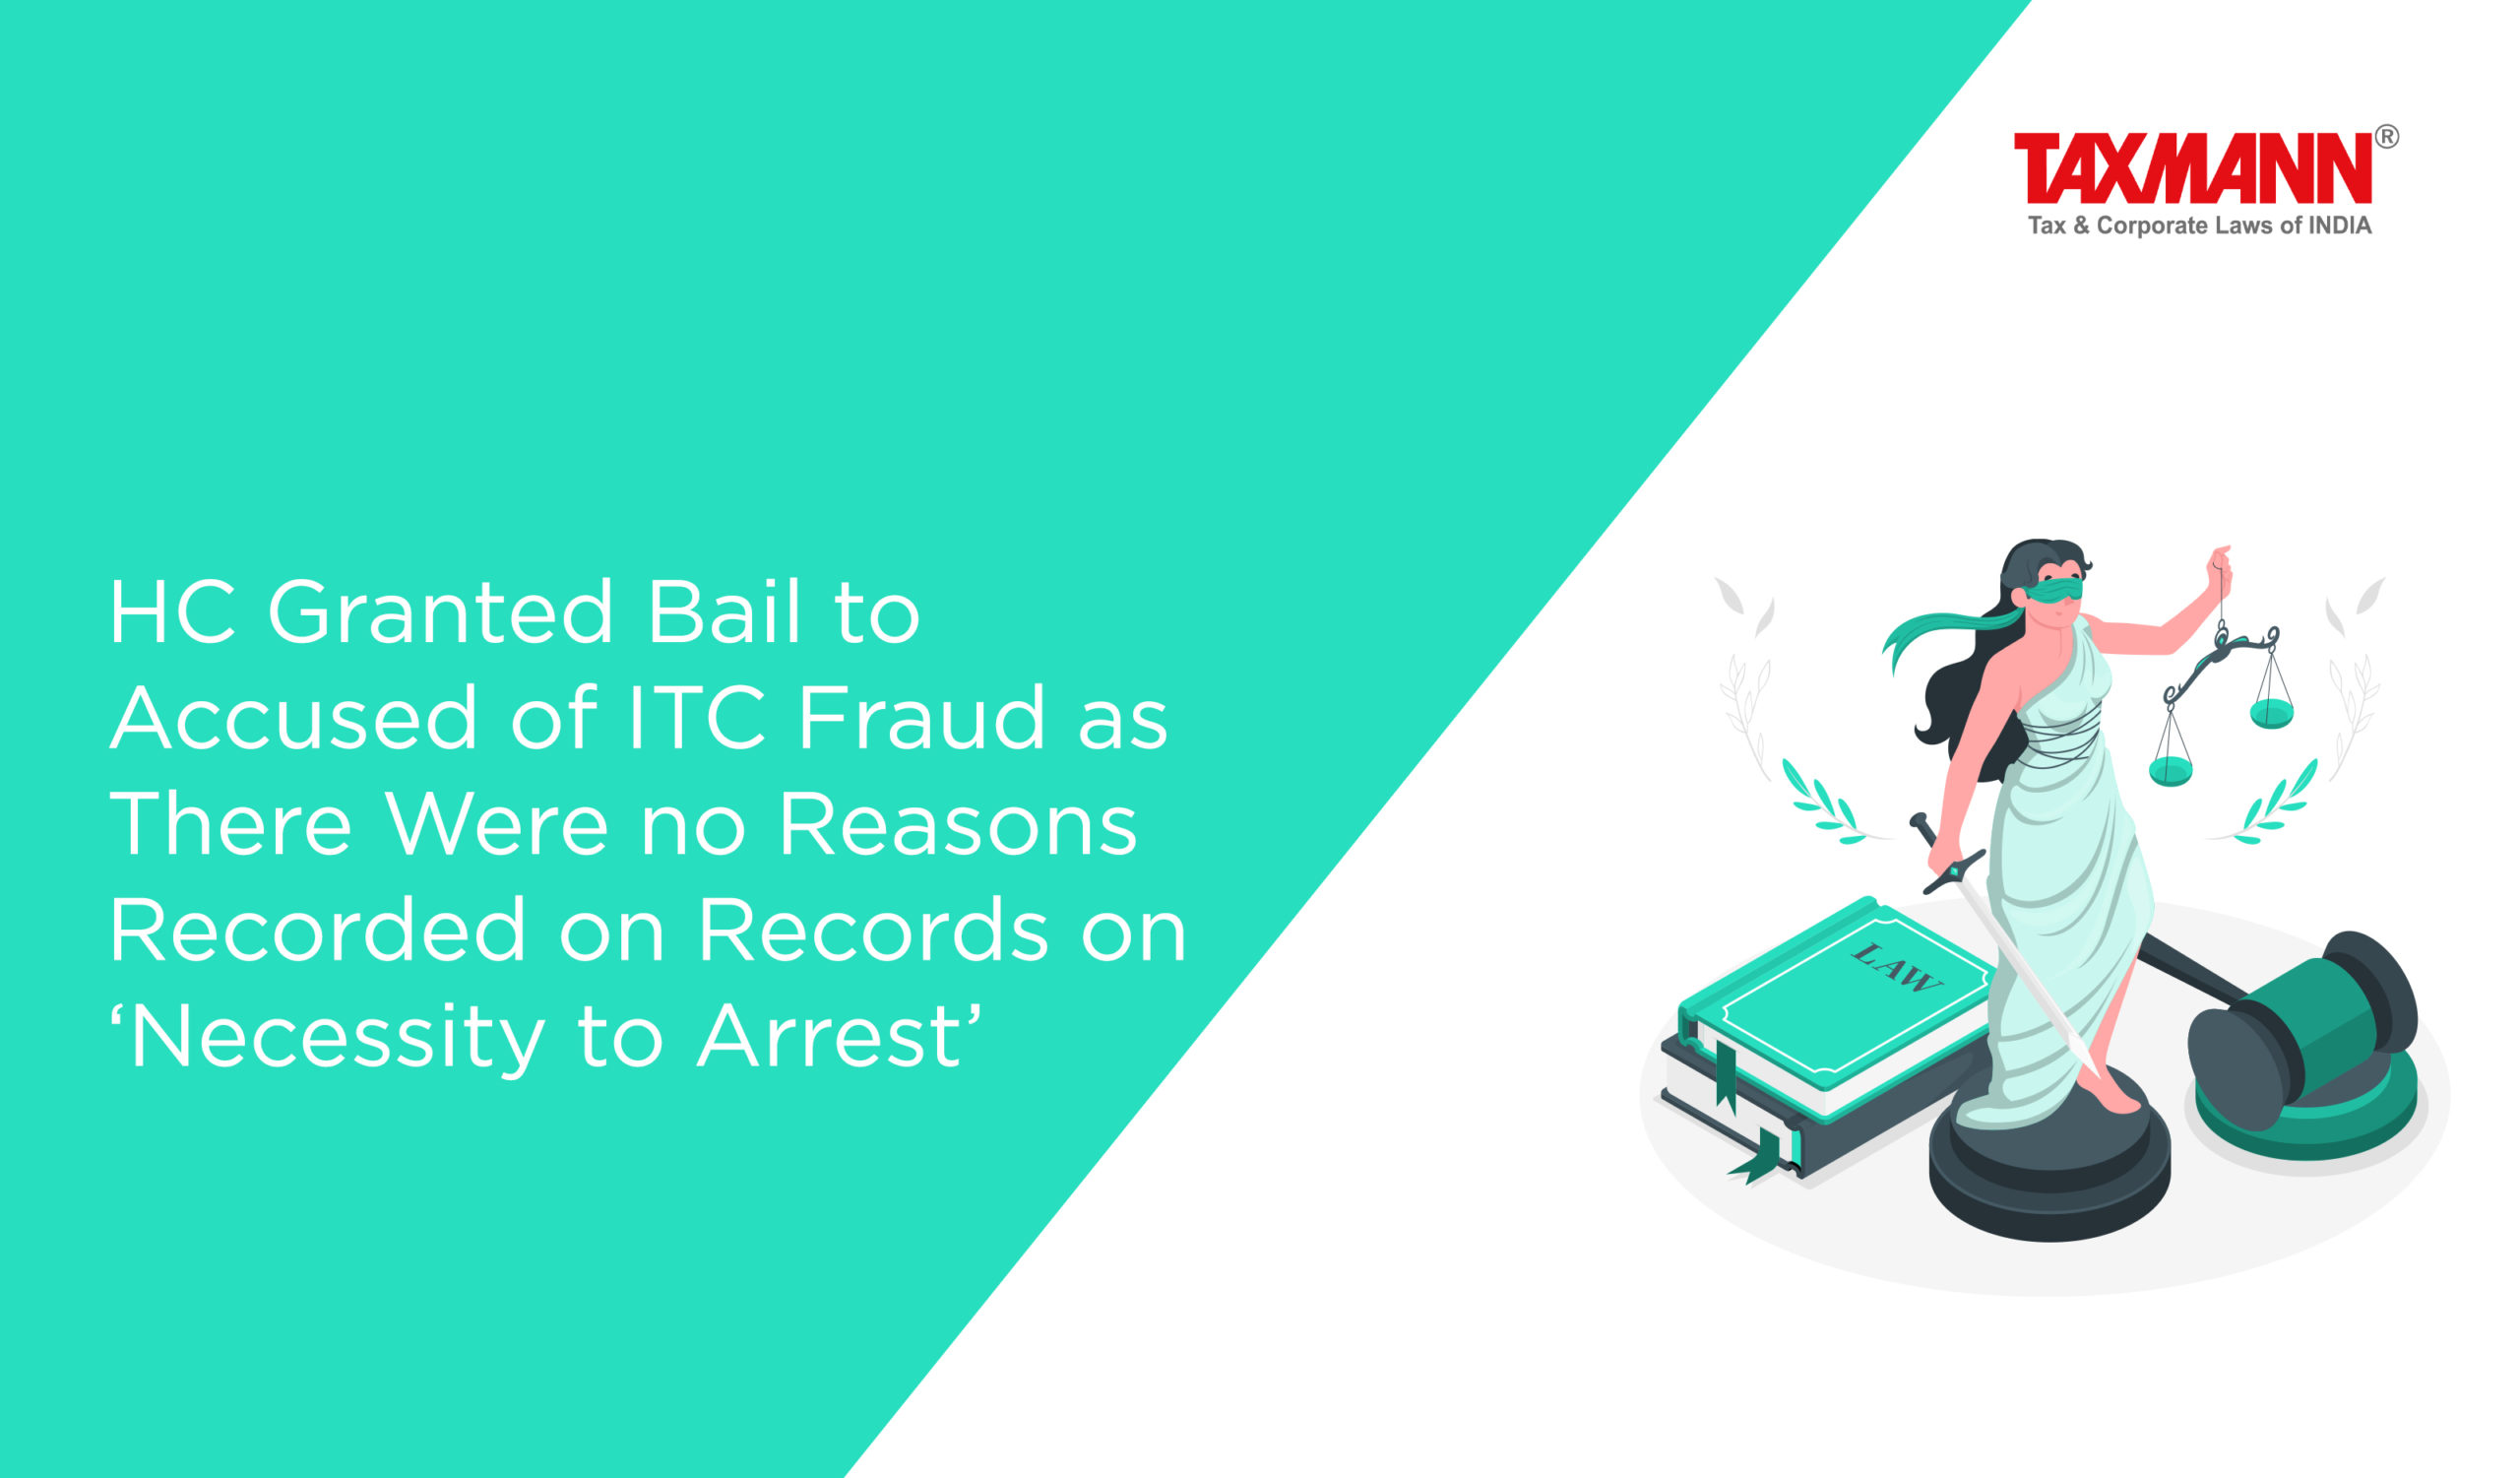 ITC Fraud